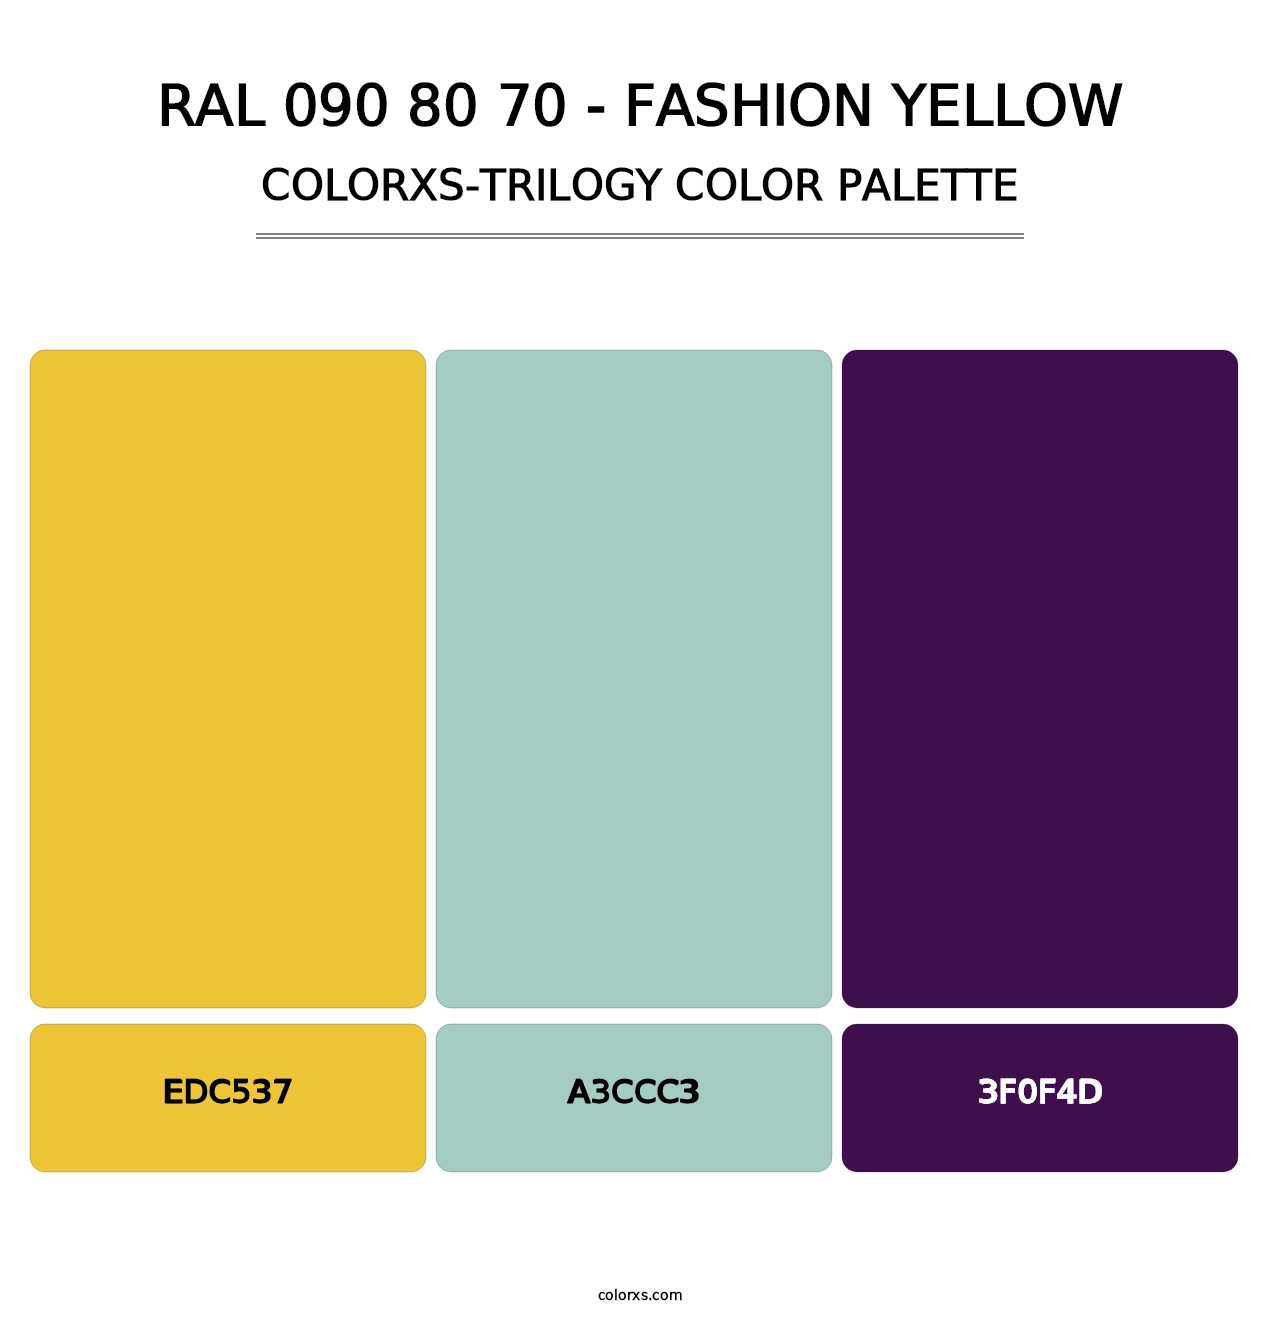 RAL 090 80 70 - Fashion Yellow - Colorxs Trilogy Palette